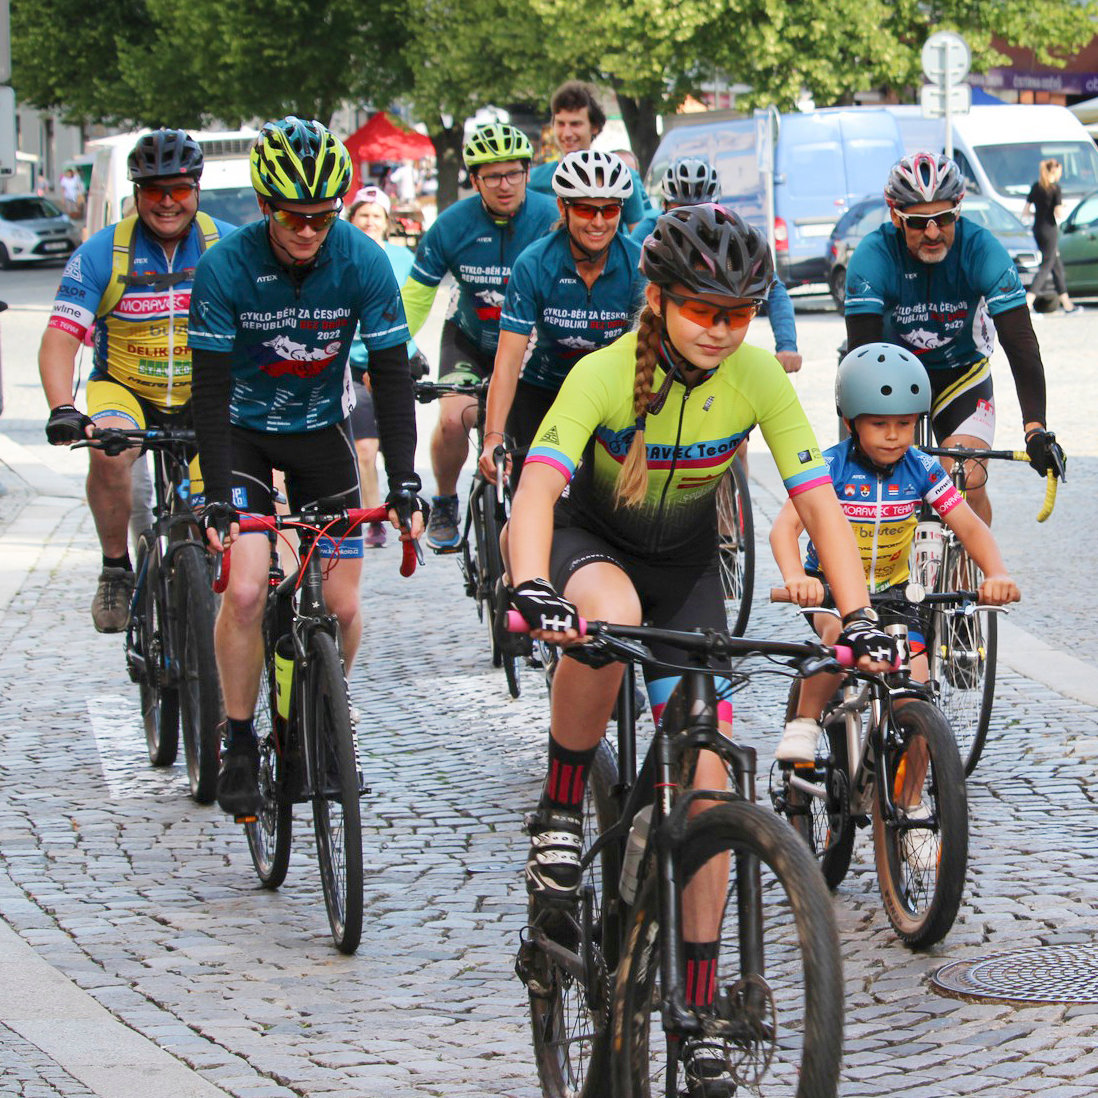 Acompañado por algunos jóvenes entusiastas de los deportes, el equipo de Cyclo‑Run sale de Boskovice.